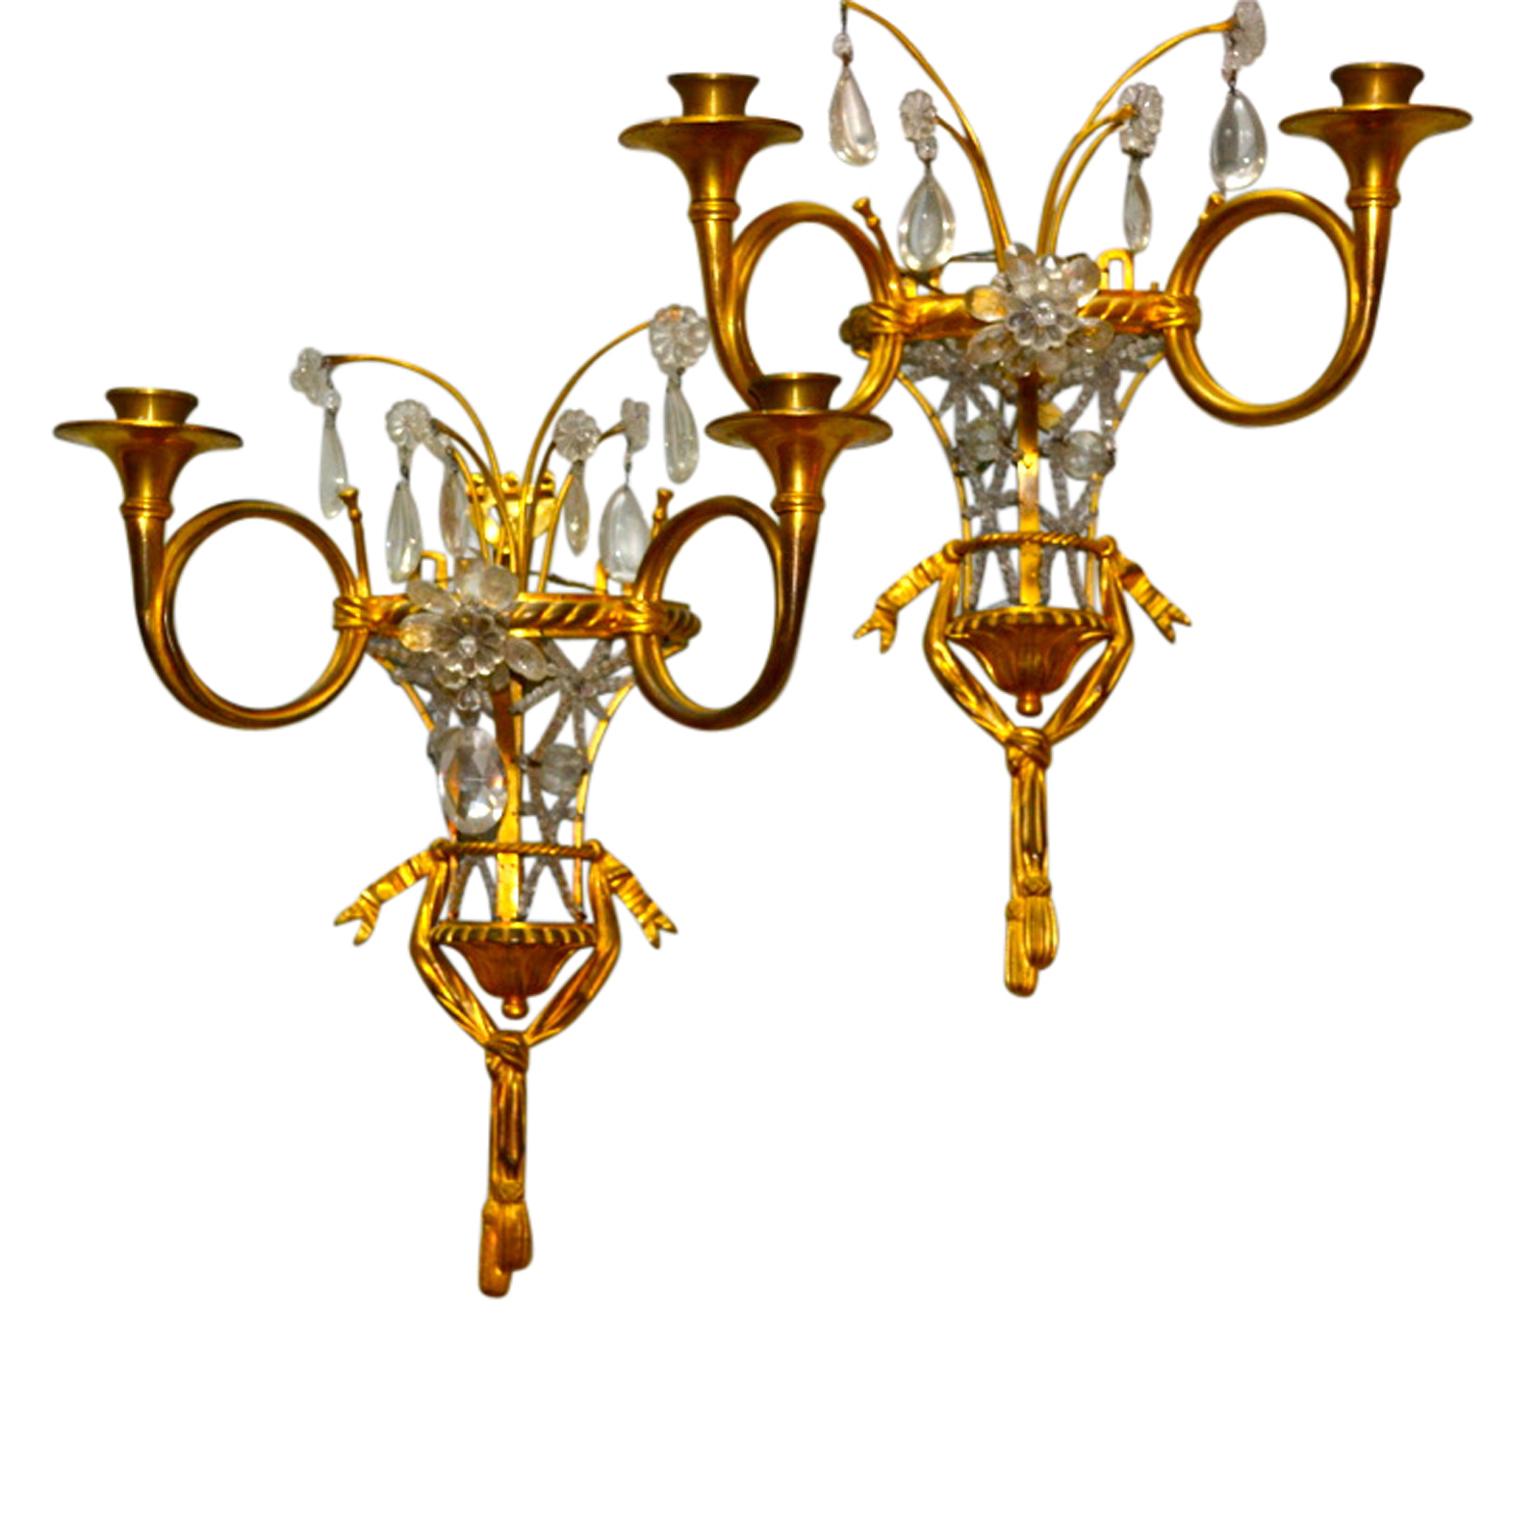 Ein Paar ungewöhnlich geformter Wandleuchter aus vergoldetem Metall und Kristall. Der halburnenförmige Korpus ist offen und mit Perlenkristallen besetzt; der Boden der 